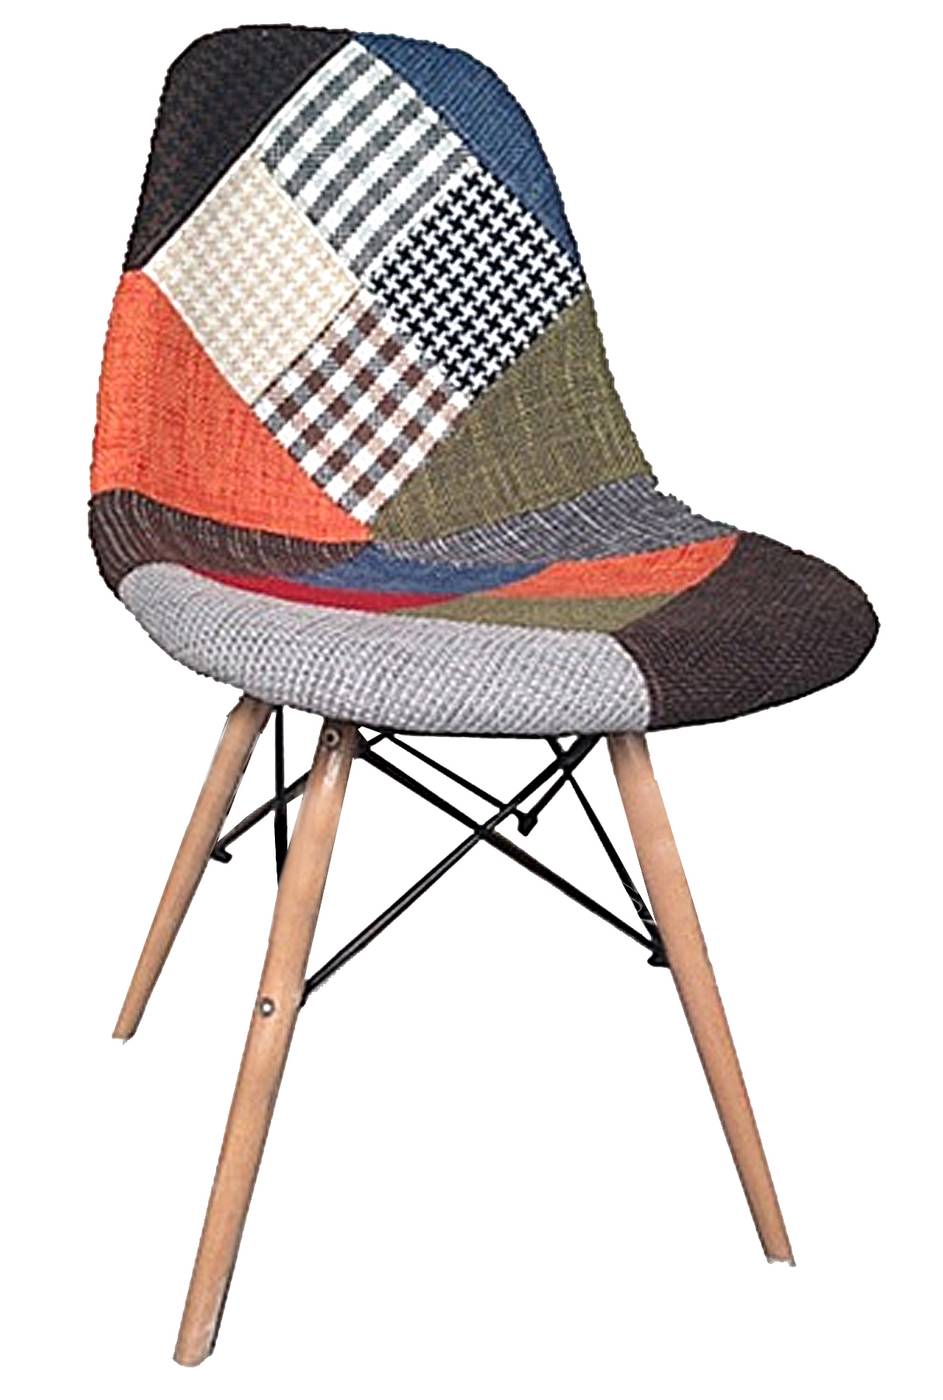 Silla de comedor. Patas de madera, con asiento y respaldo acolchado tapizado patchwork.